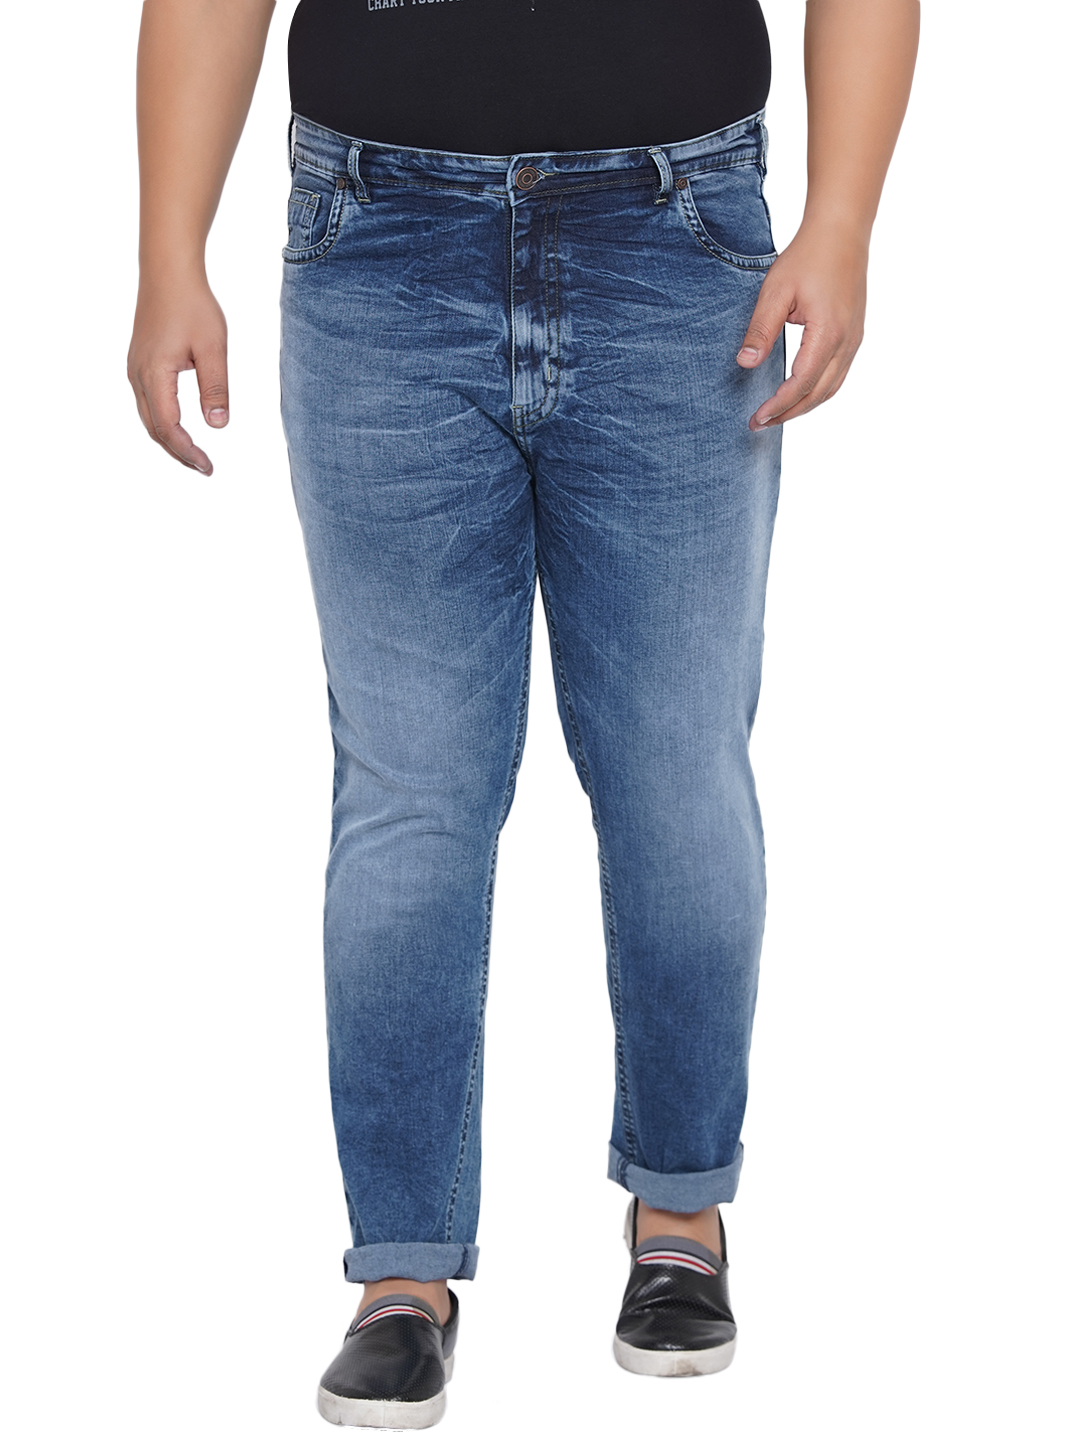 bottomwear/jeans/JPJ12204/jpj12204-2.jpg